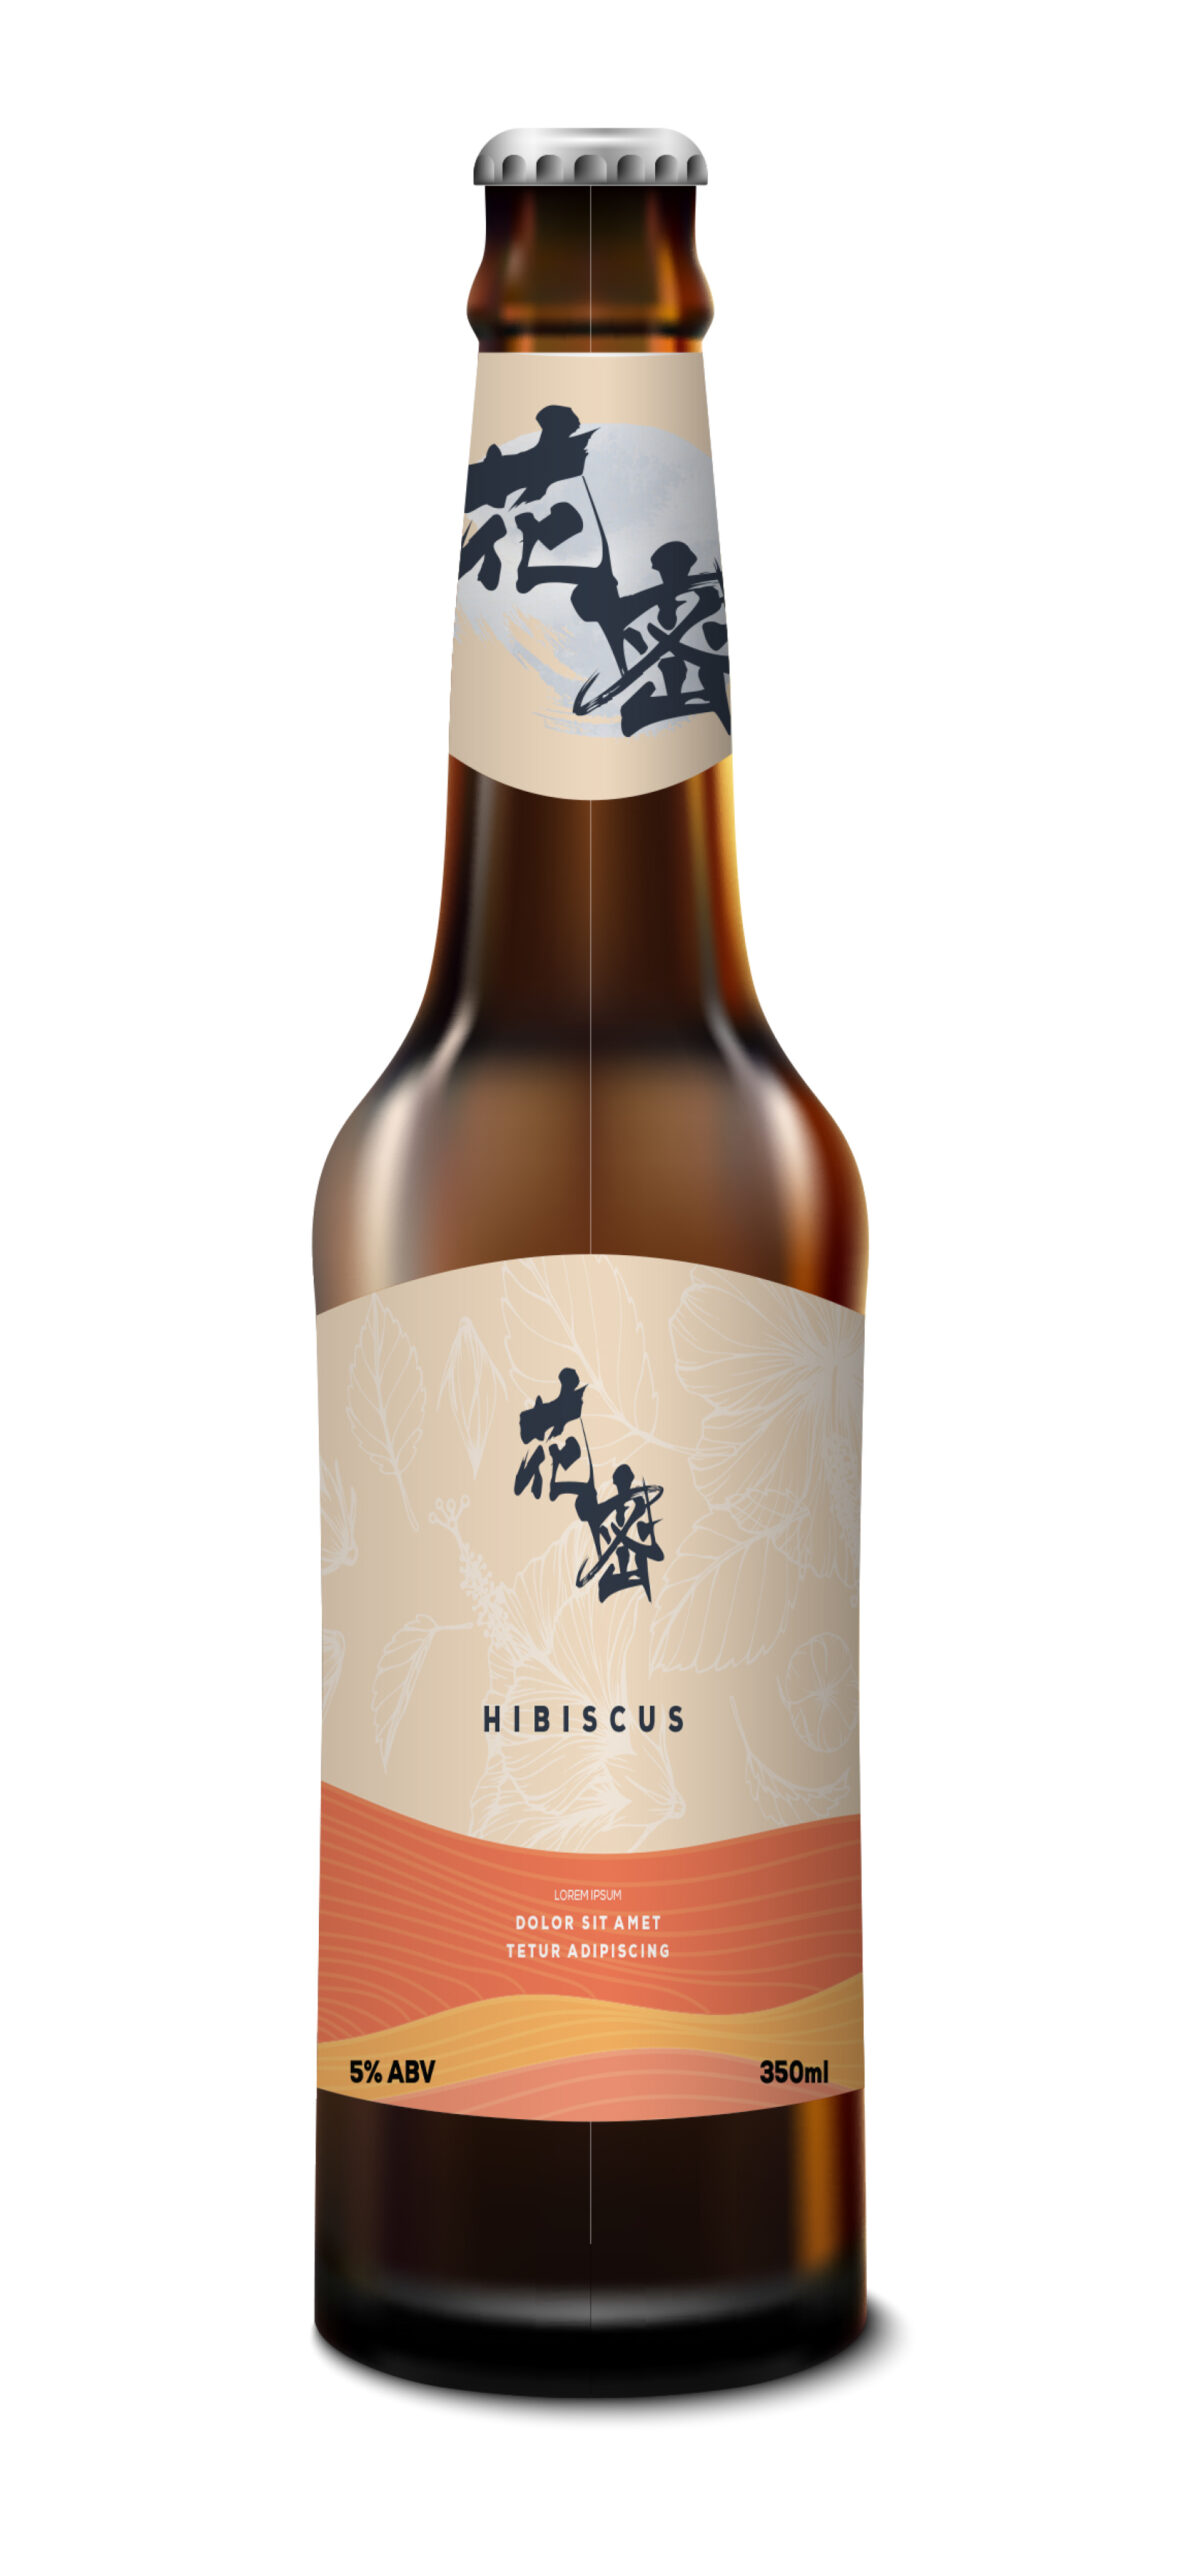 A label design mock up on beer bottle